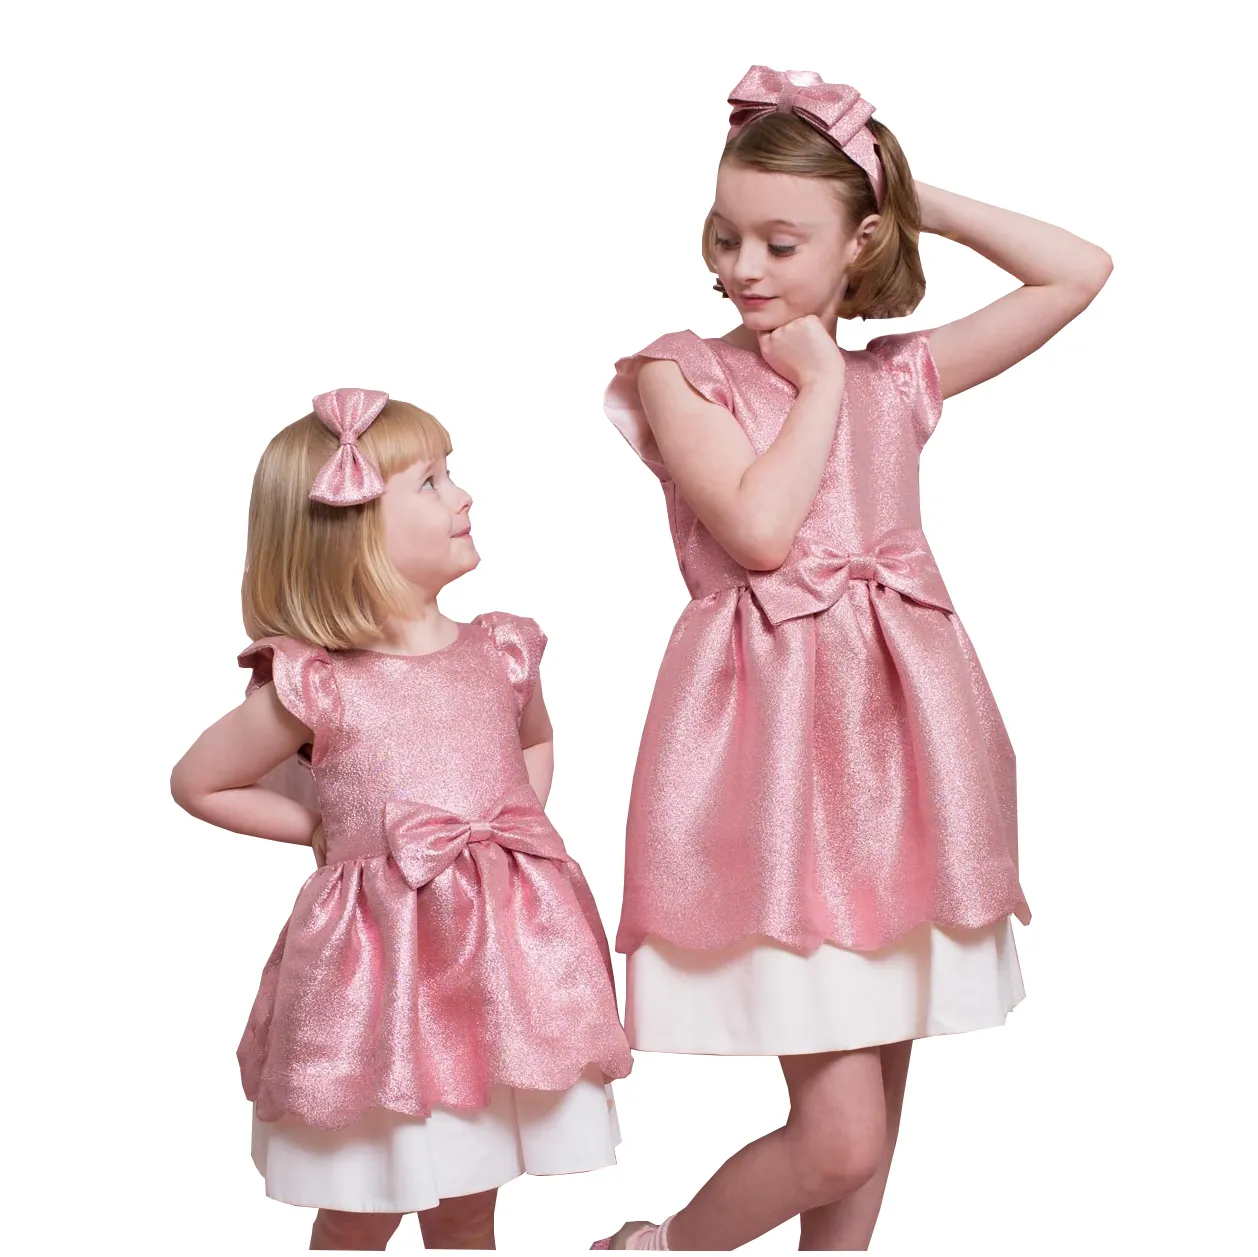 광주 의류 제조업체 어린이 소녀 드레스 패션 드레스 파티 드레스